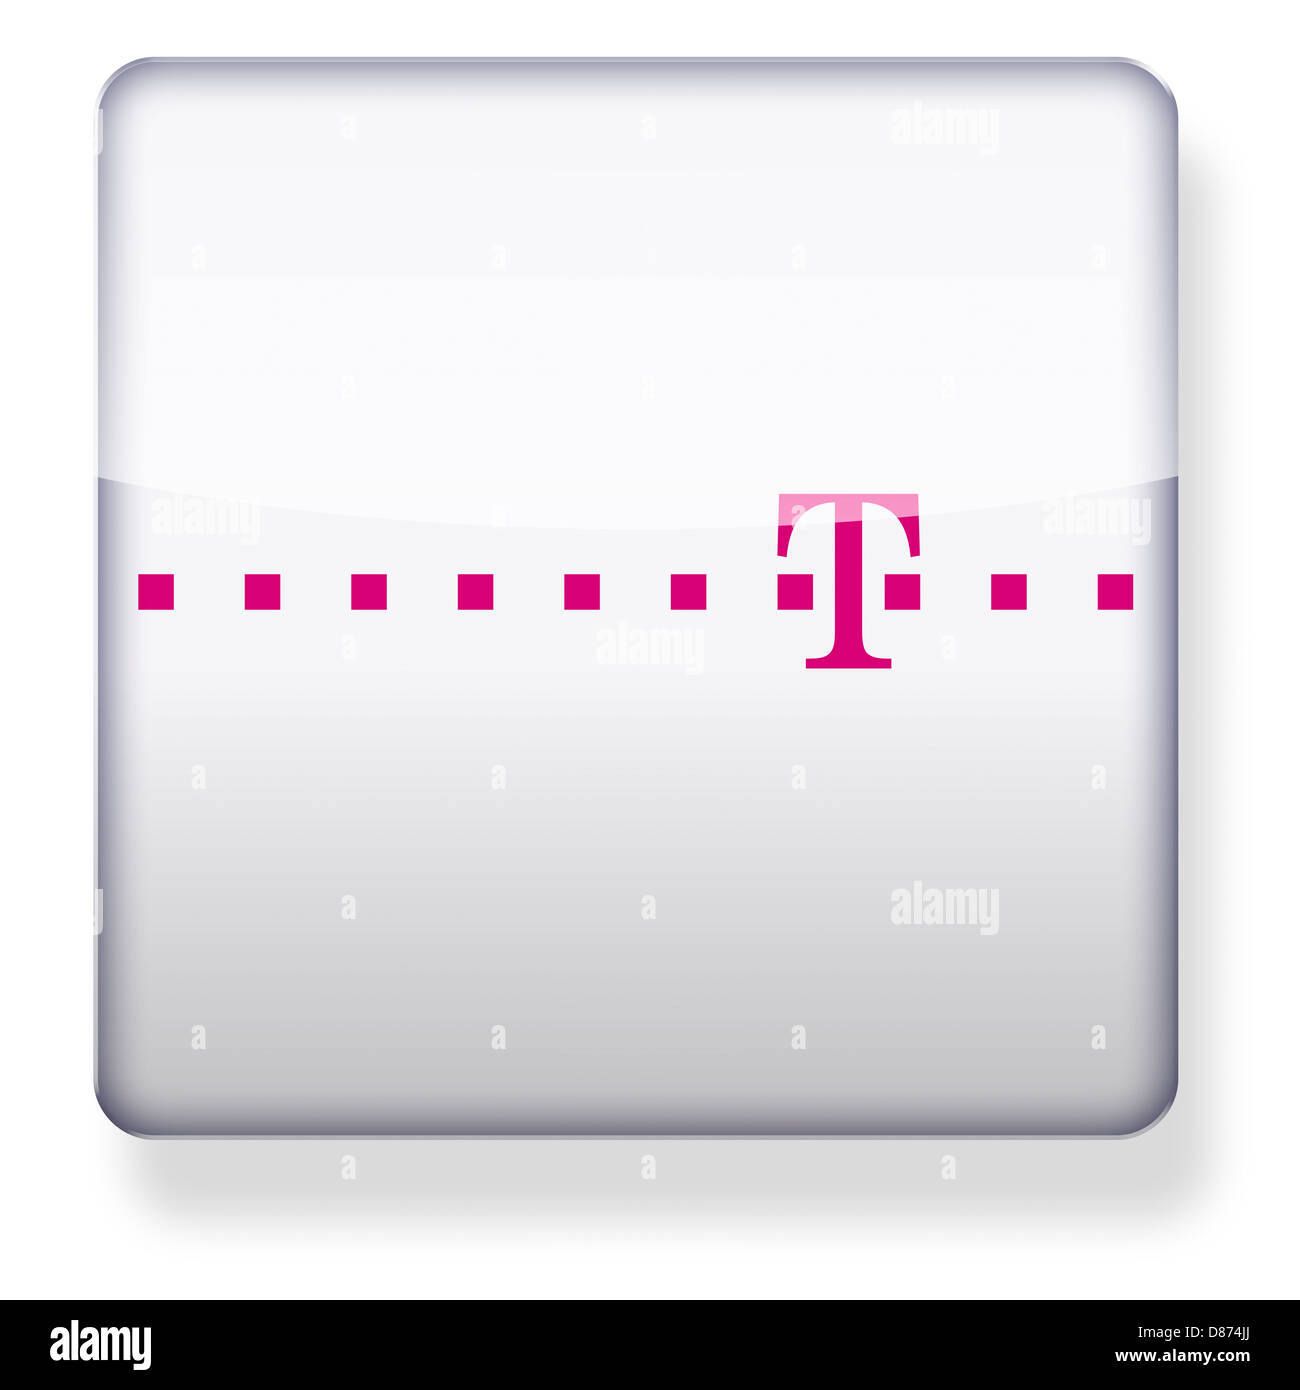 Deutsche Telekom logo comme une icône de l'application. Chemin de détourage inclus. Banque D'Images